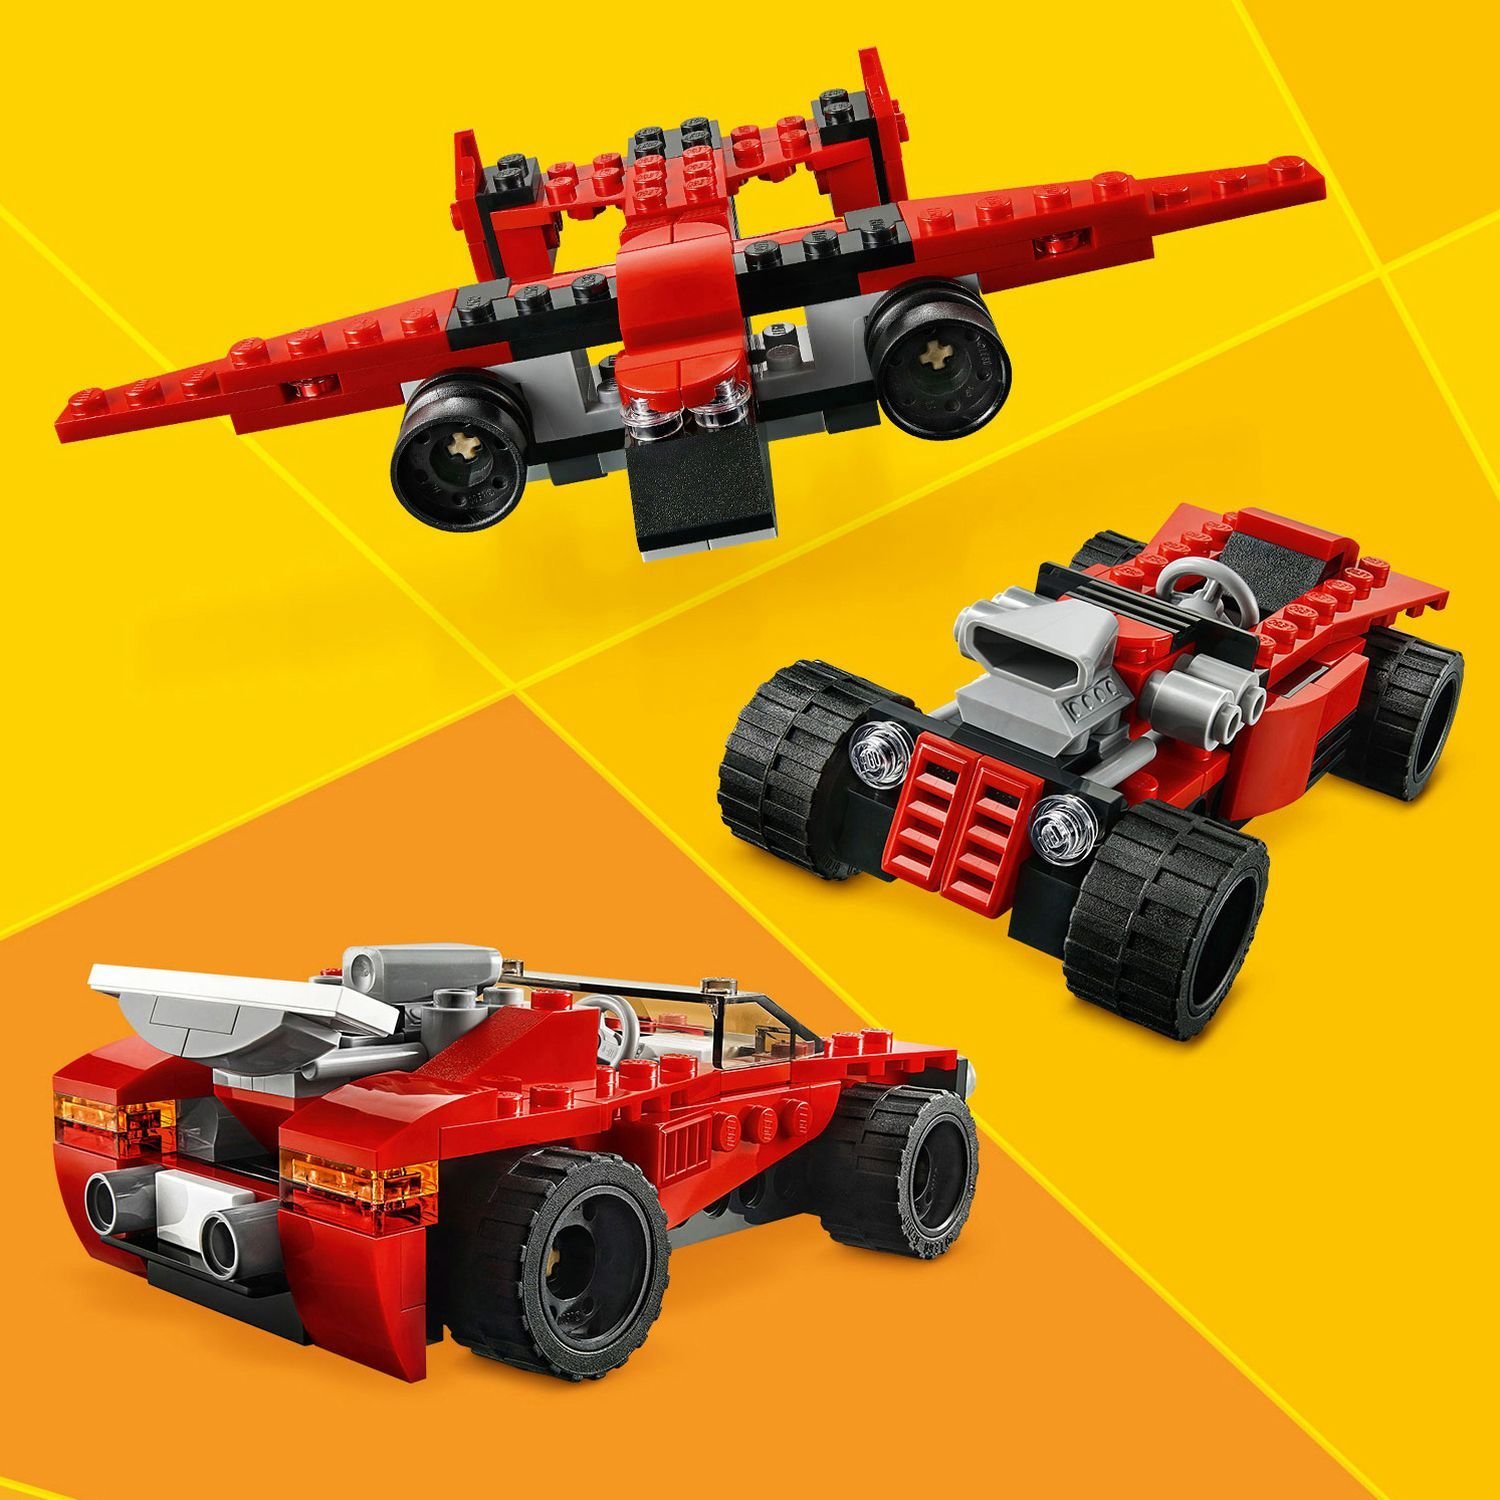 Lego Creator 31100 Спортивный автомобиль